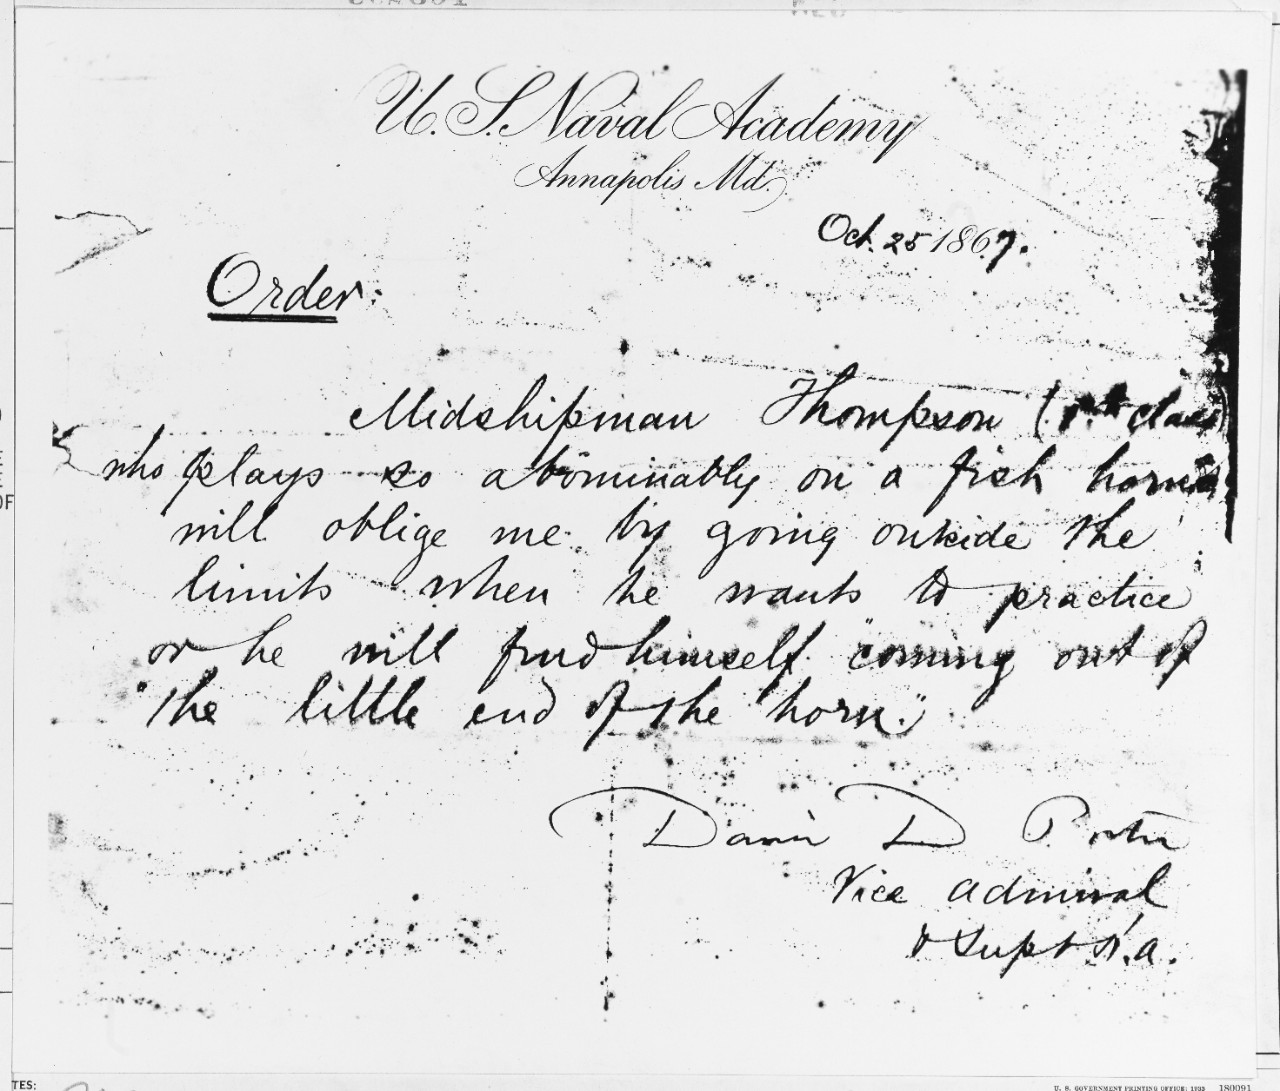 Porter's order to Midshipman Thompson